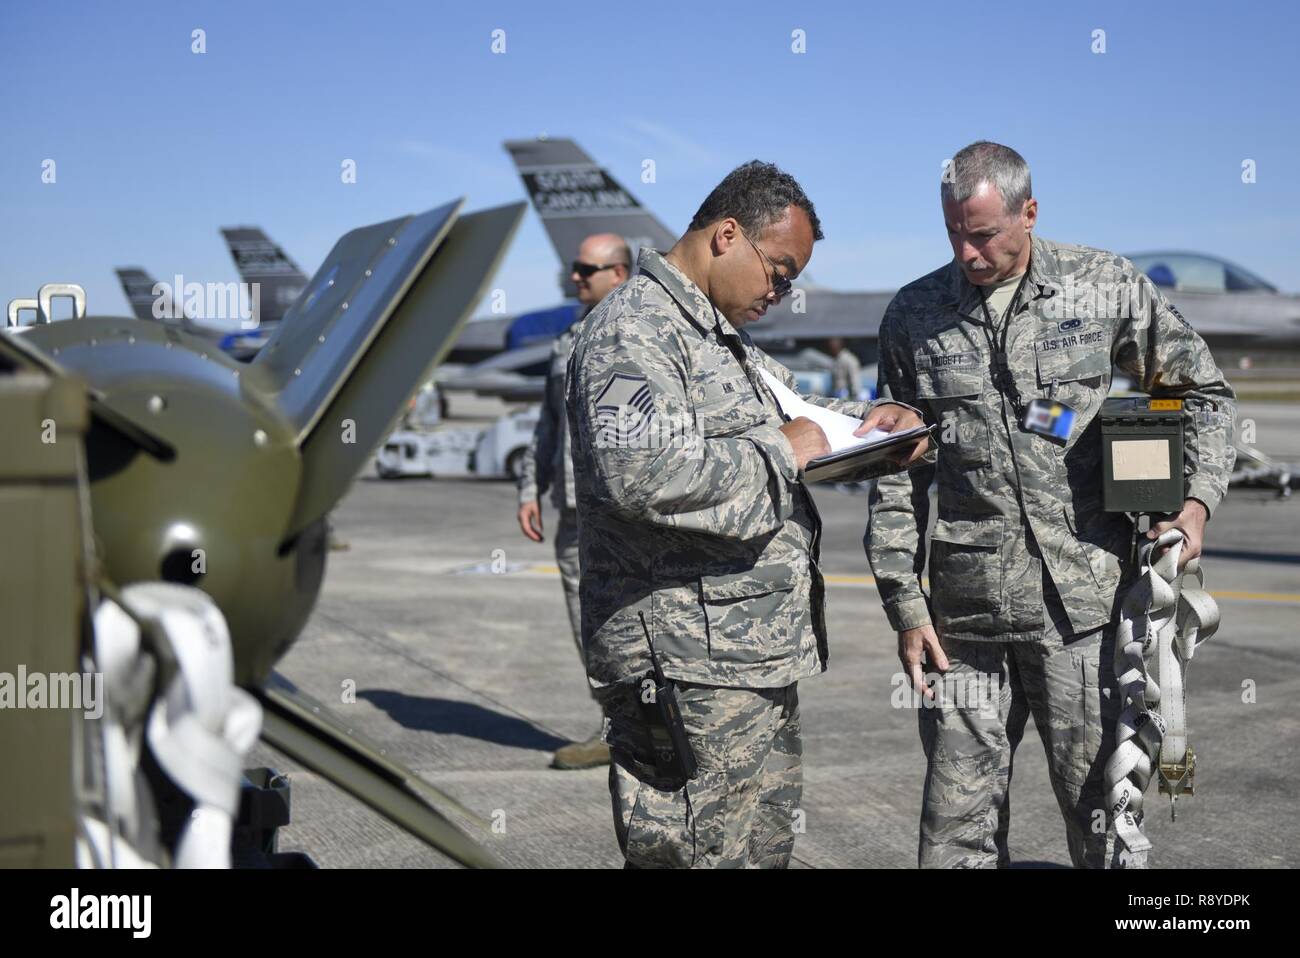 Us Air Force Master Sgt. Anthony King, Links, und Tech. Sgt. Sherman Padgett, der 169Th Maintenance Group, diskutieren, die die Verteilung der Bomben zu Kampfjets in der Tyndall Air Force Base in Florida am März 11, 2017 diskutieren. Mehr als 200 Flieger von der 169th Fighter Wing, South Carolina Air National Guard eingesetzt werden für die Waffensysteme Auswertung Programms (WSEP). Der WSEP Zweck ist die Fähigkeit einer Einheit, um effektiv Munition durch alle Stadien liefern zu bewerten, von Munition, Waffen laden auf das tatsächliche Start- oder Fallenlassen der Waffen aus dem Flugzeug zu bauen. Stockfoto